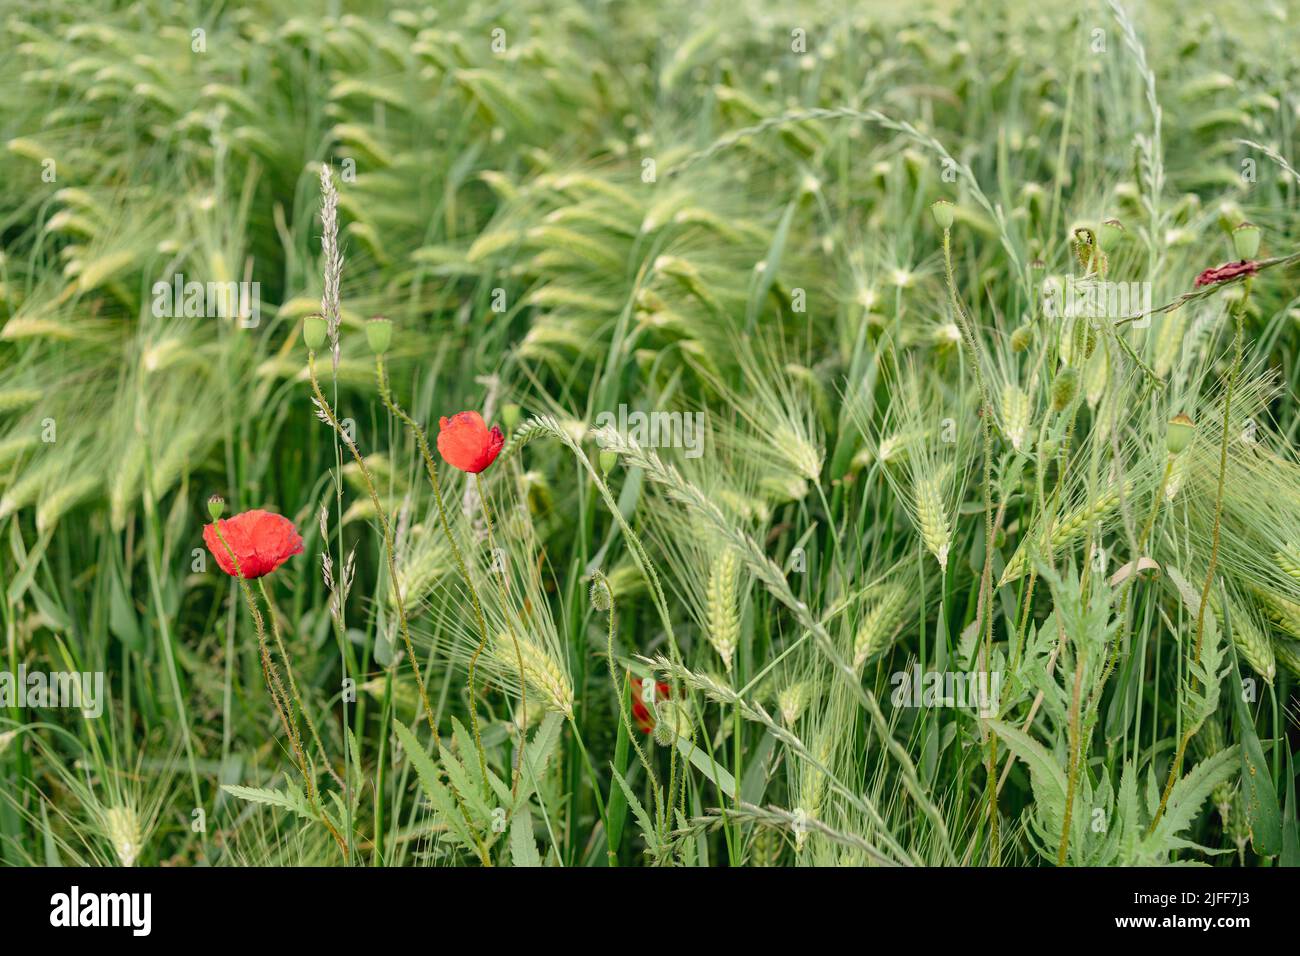 Campos en verano. Flores frescas de mazorcas verdes de trigo y amapolas. Foto de stock